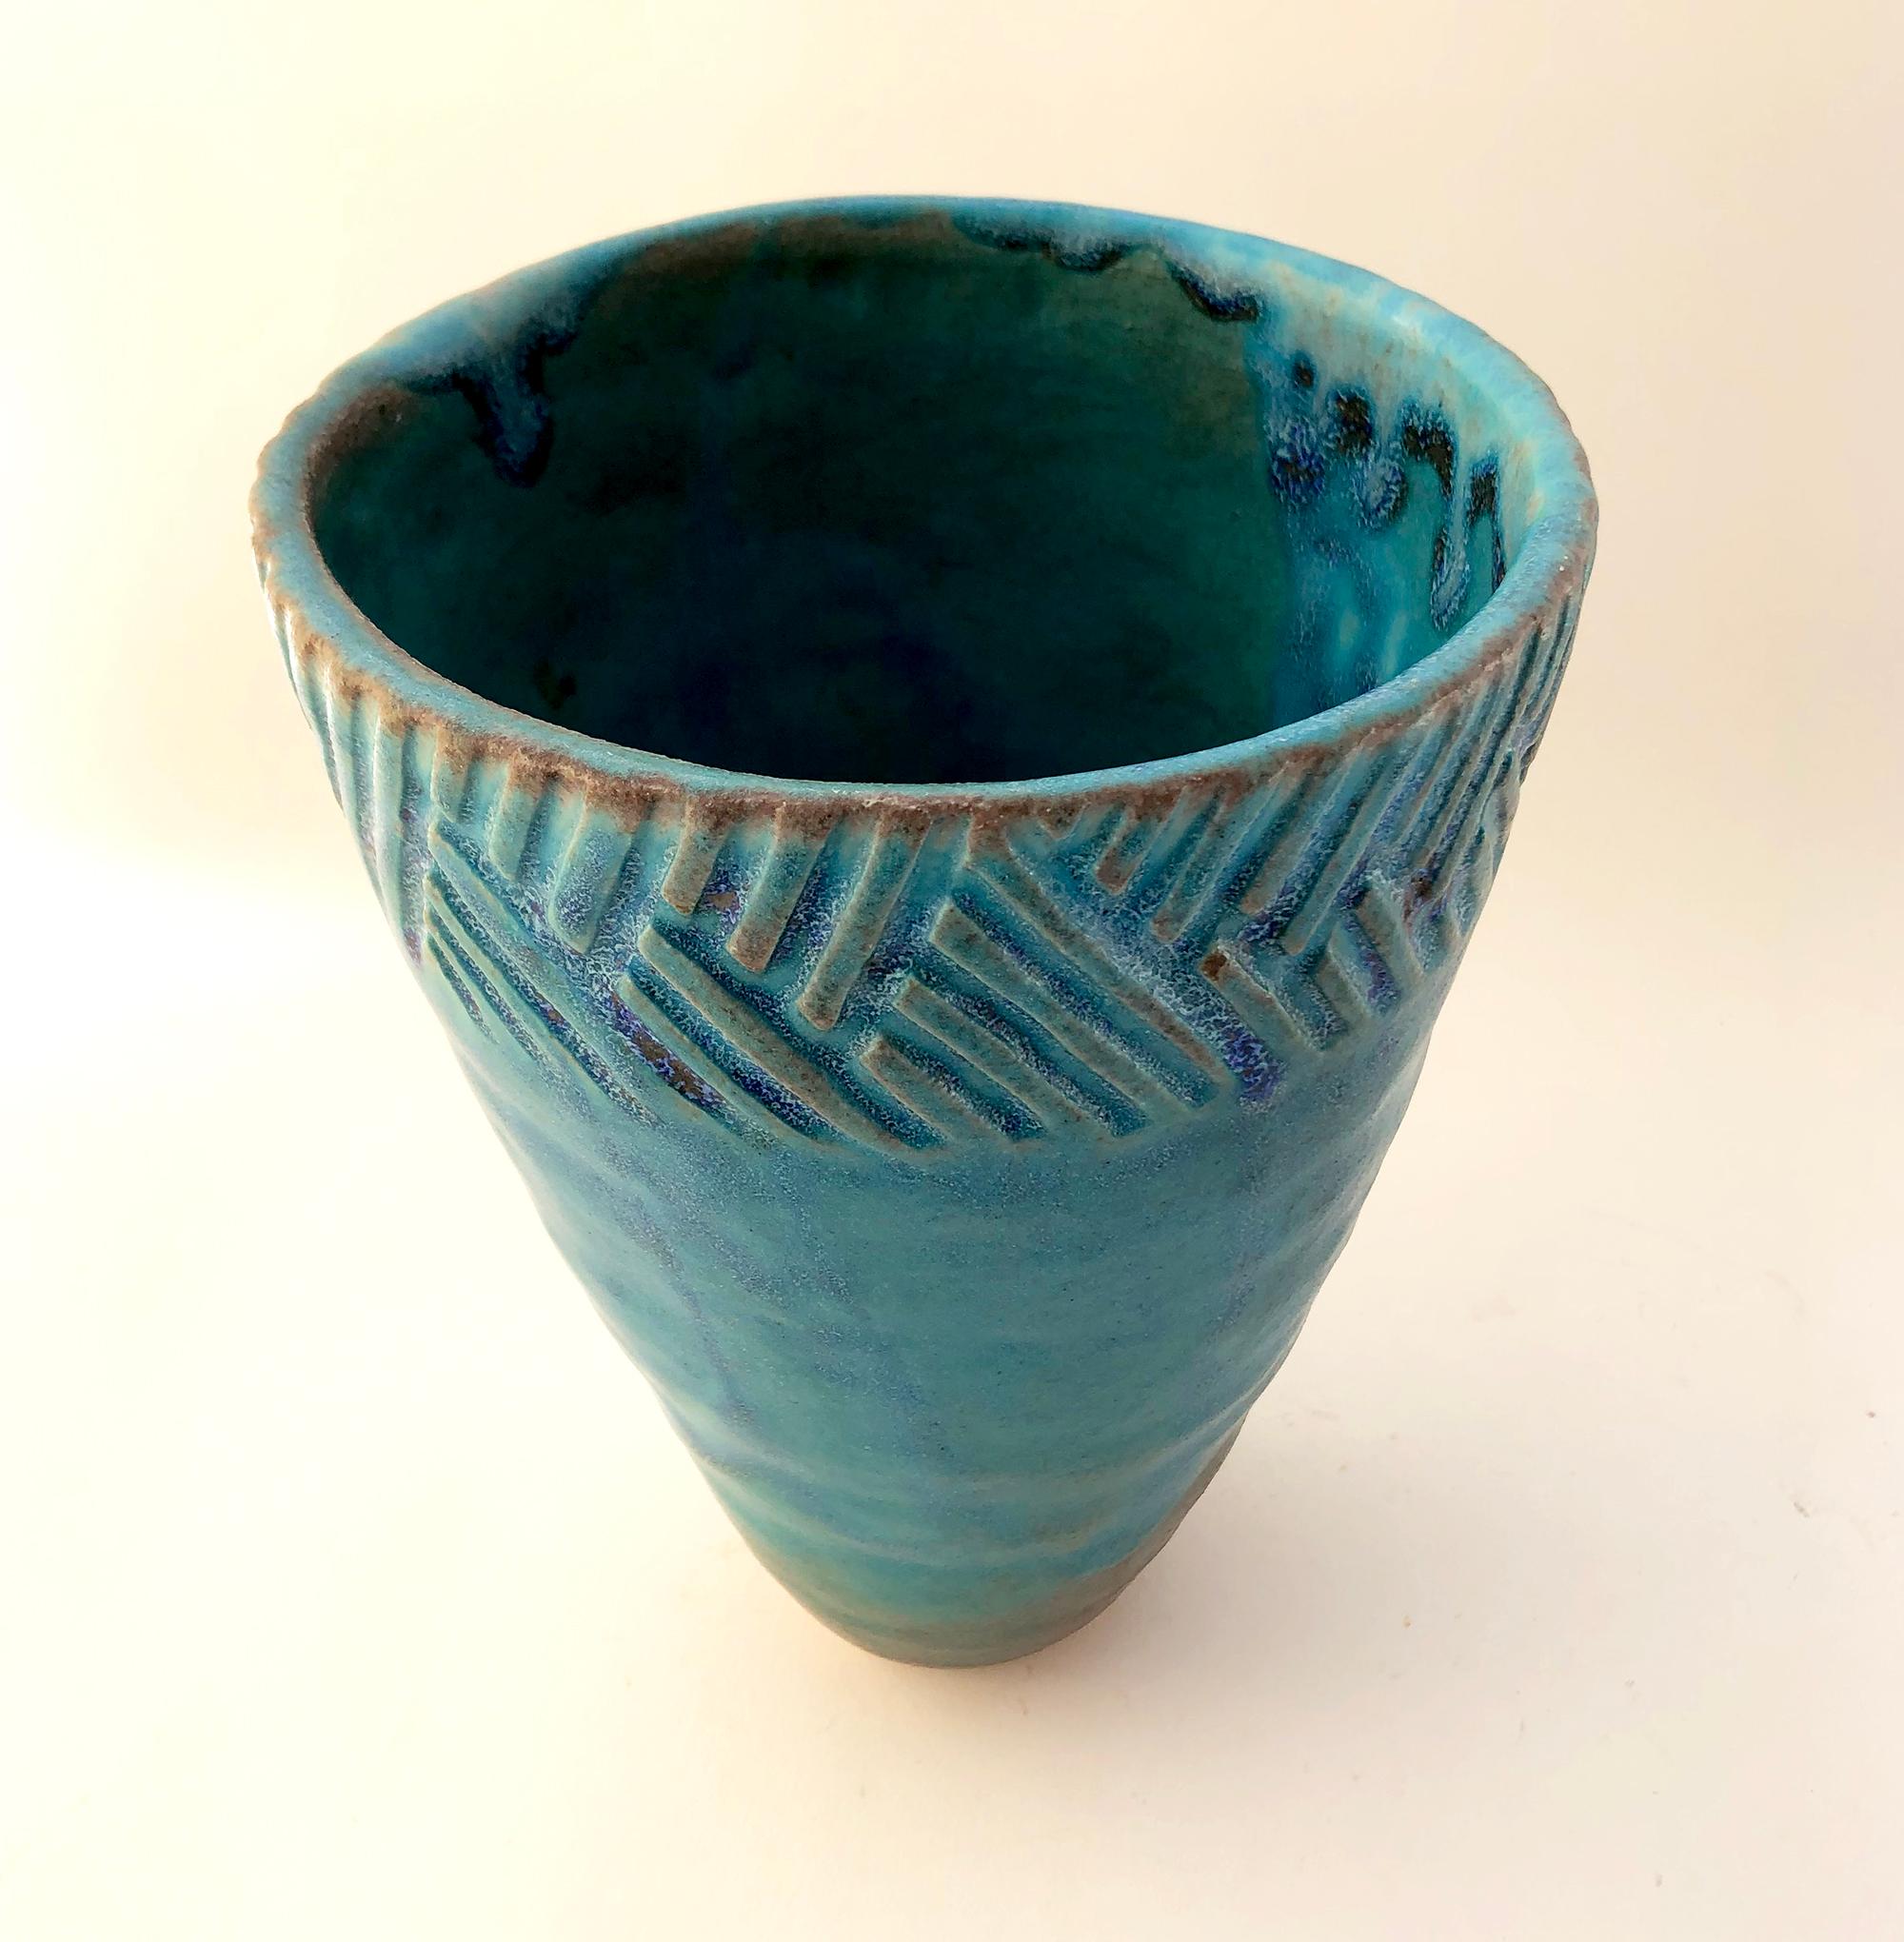 Signed handmade ceramic vase, maker unknown. Measures 9